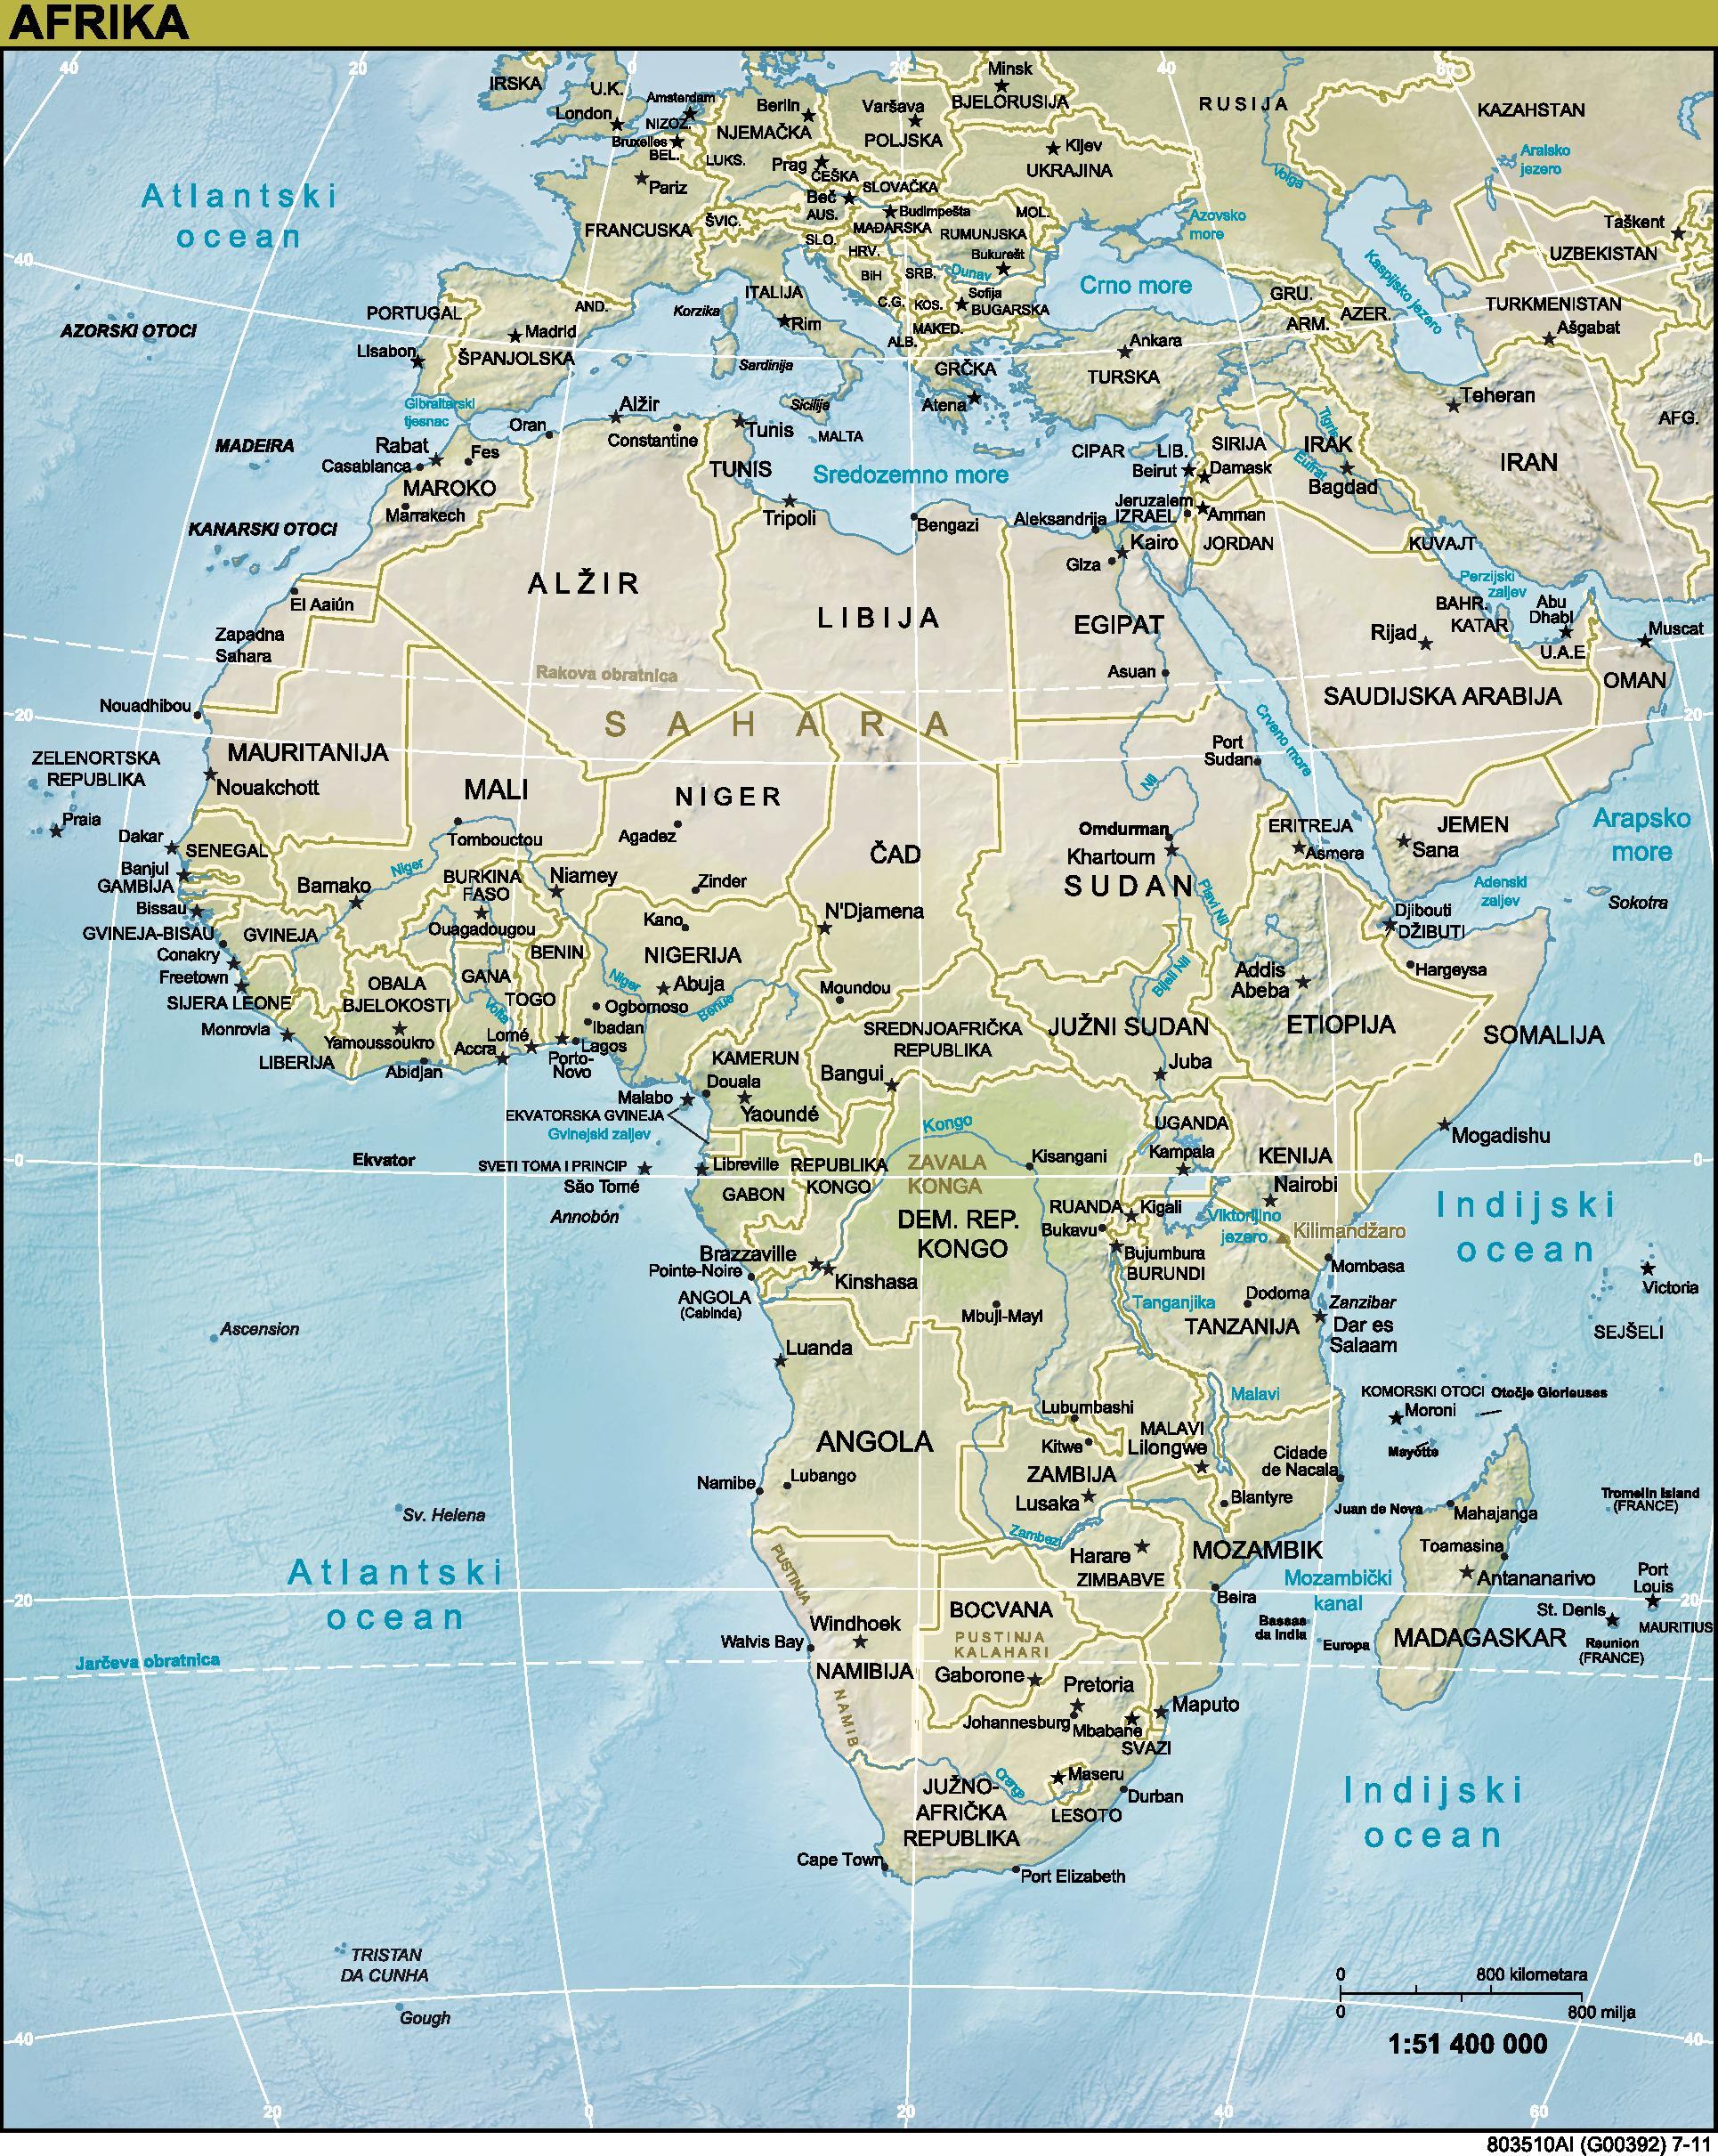 pdf file of world map